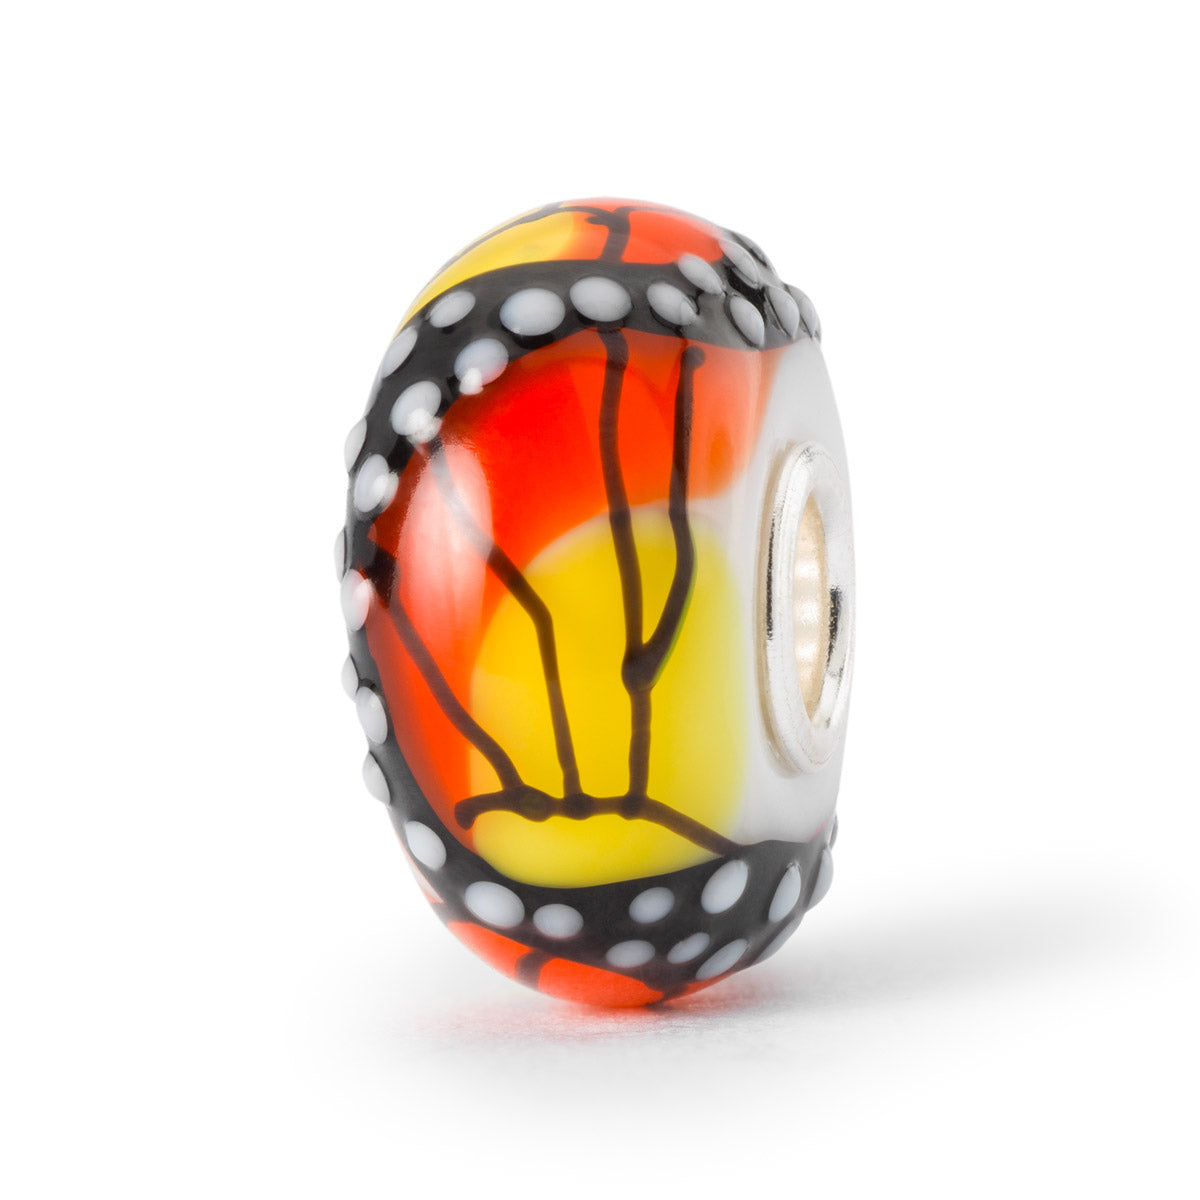 Ali dell'Energia è un beads in vetro Trollbeads su cui è disegnata una farfalla arancione con sfumature gialle.